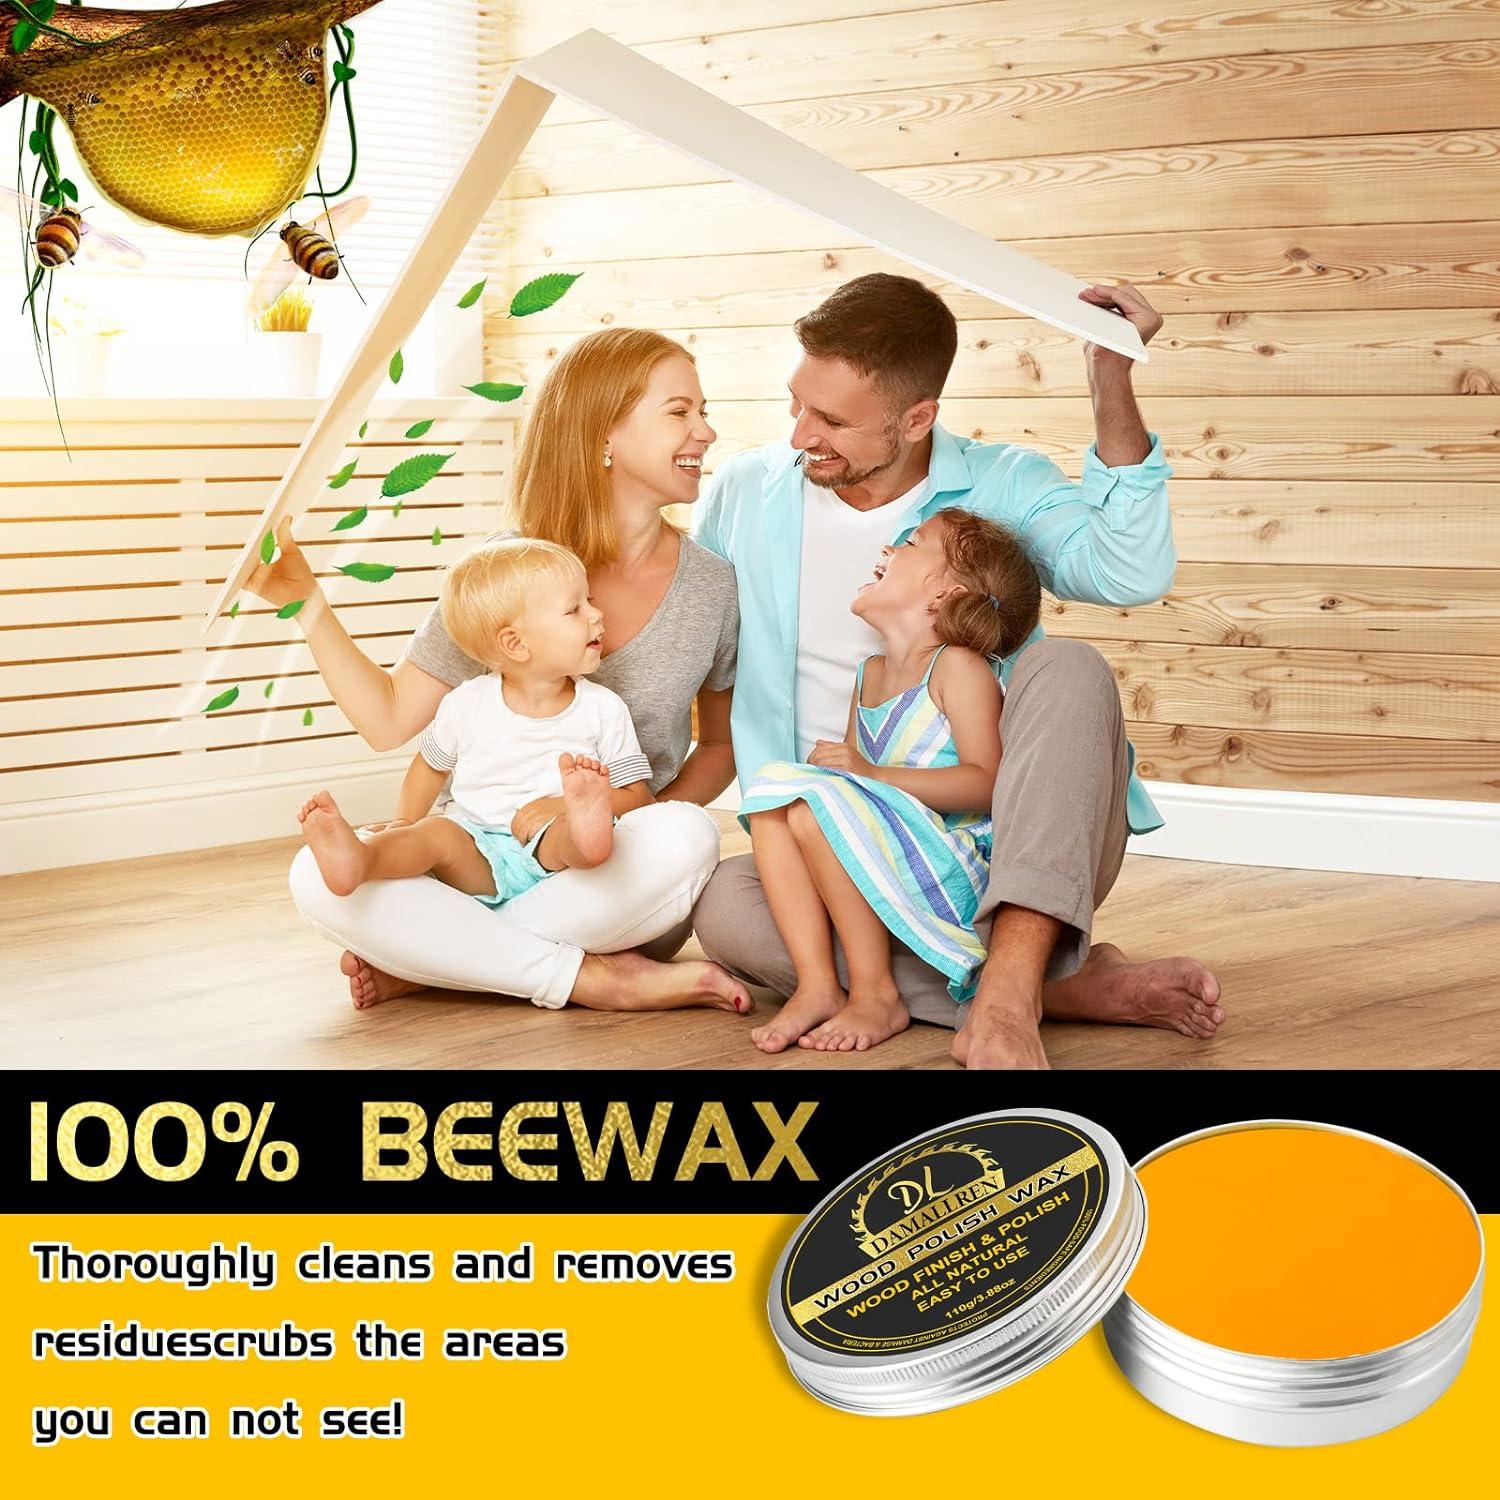 Beeswax Furniture Polish Wood Seasoning Beewax Natural Wood Wax Traditional